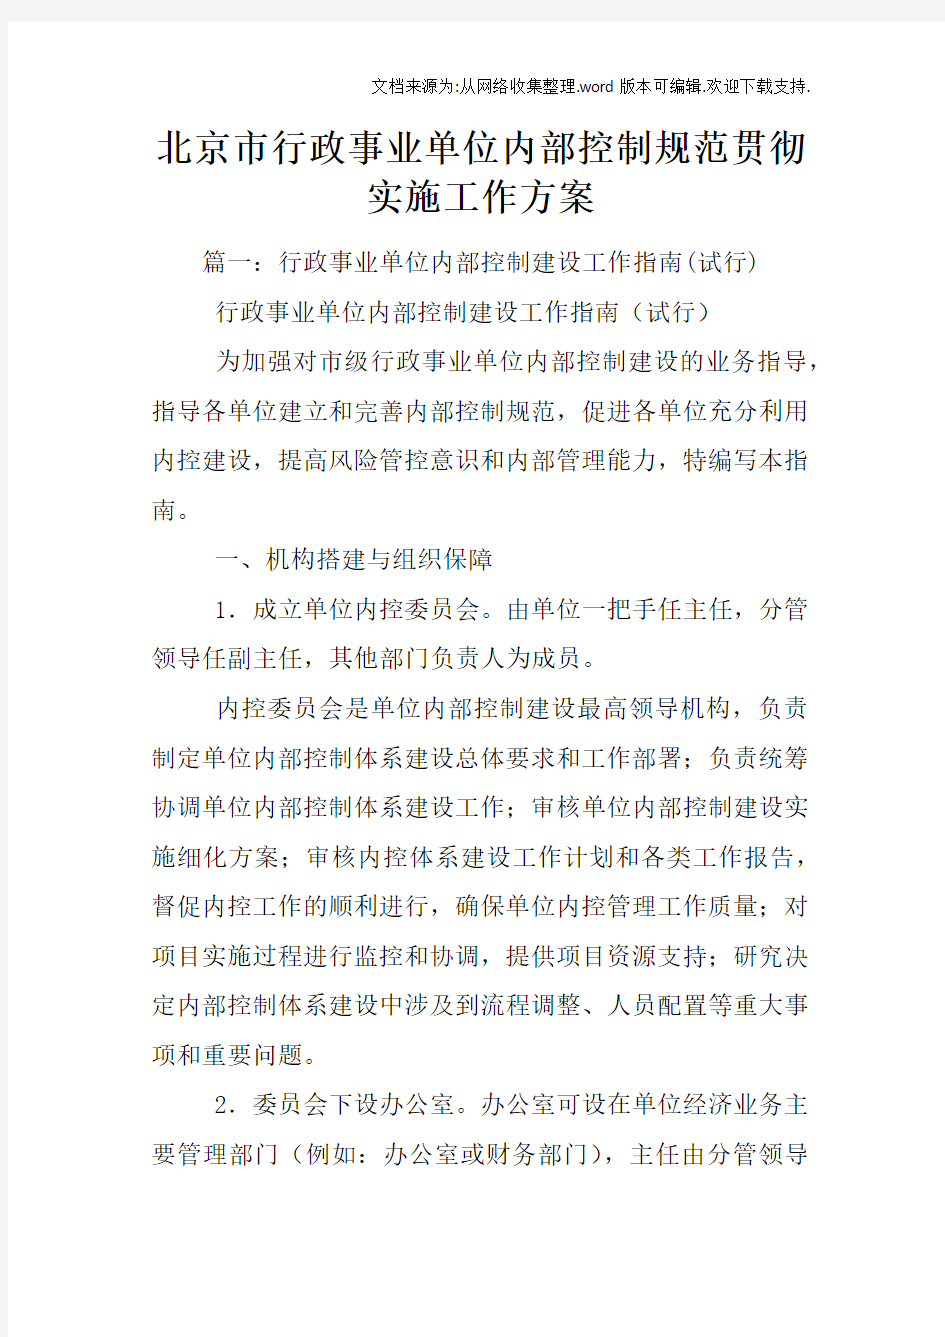 北京市行政事业单位内部控制规范贯彻实施工作方案